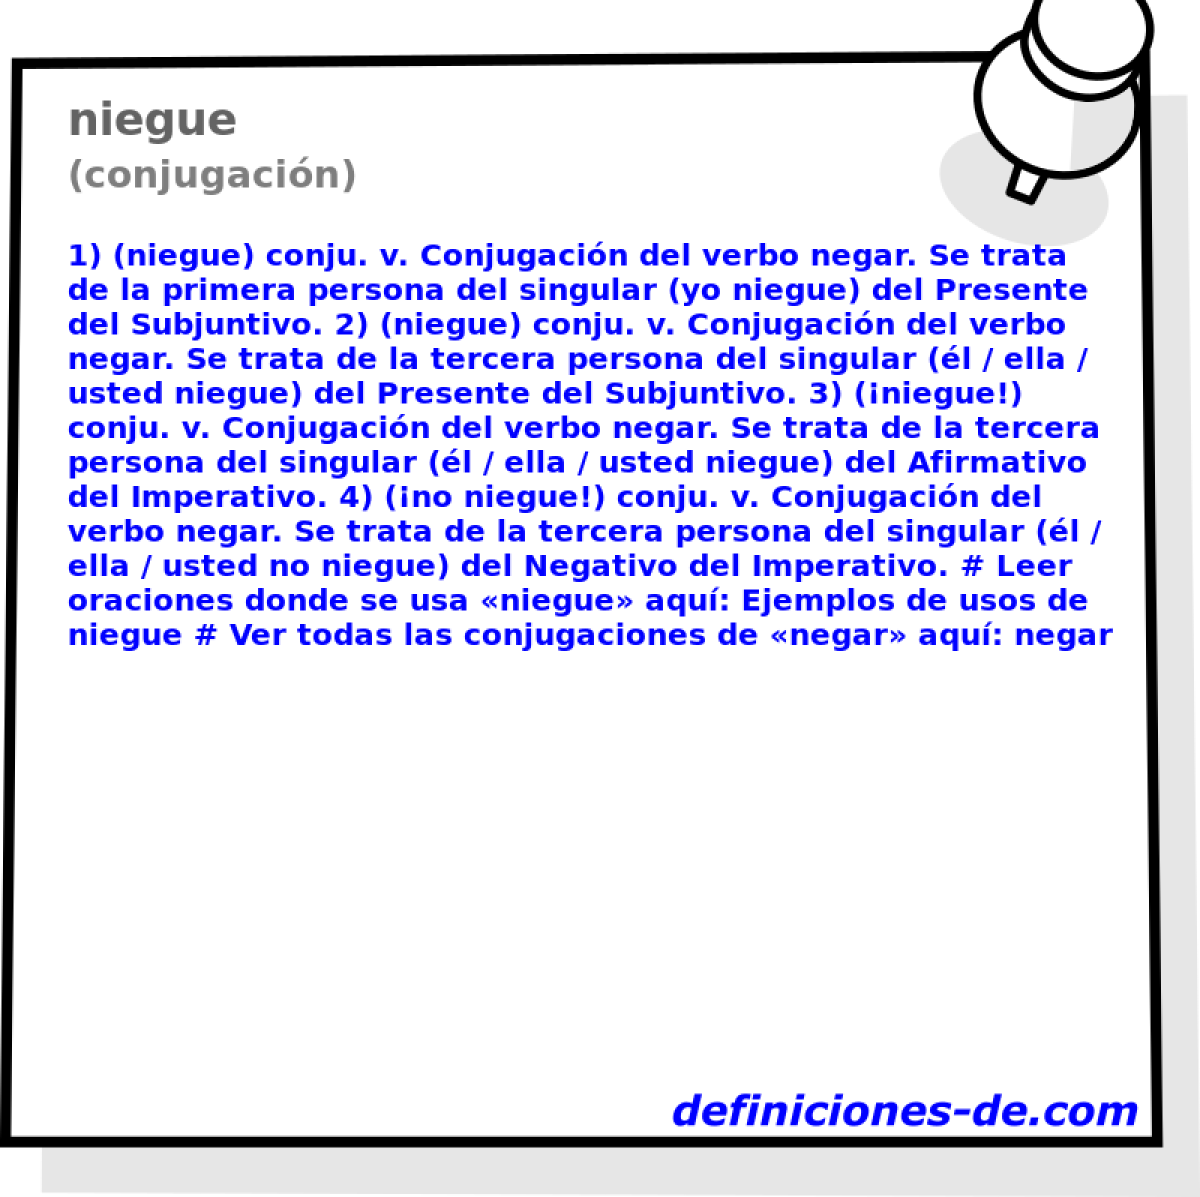 niegue (conjugacin)